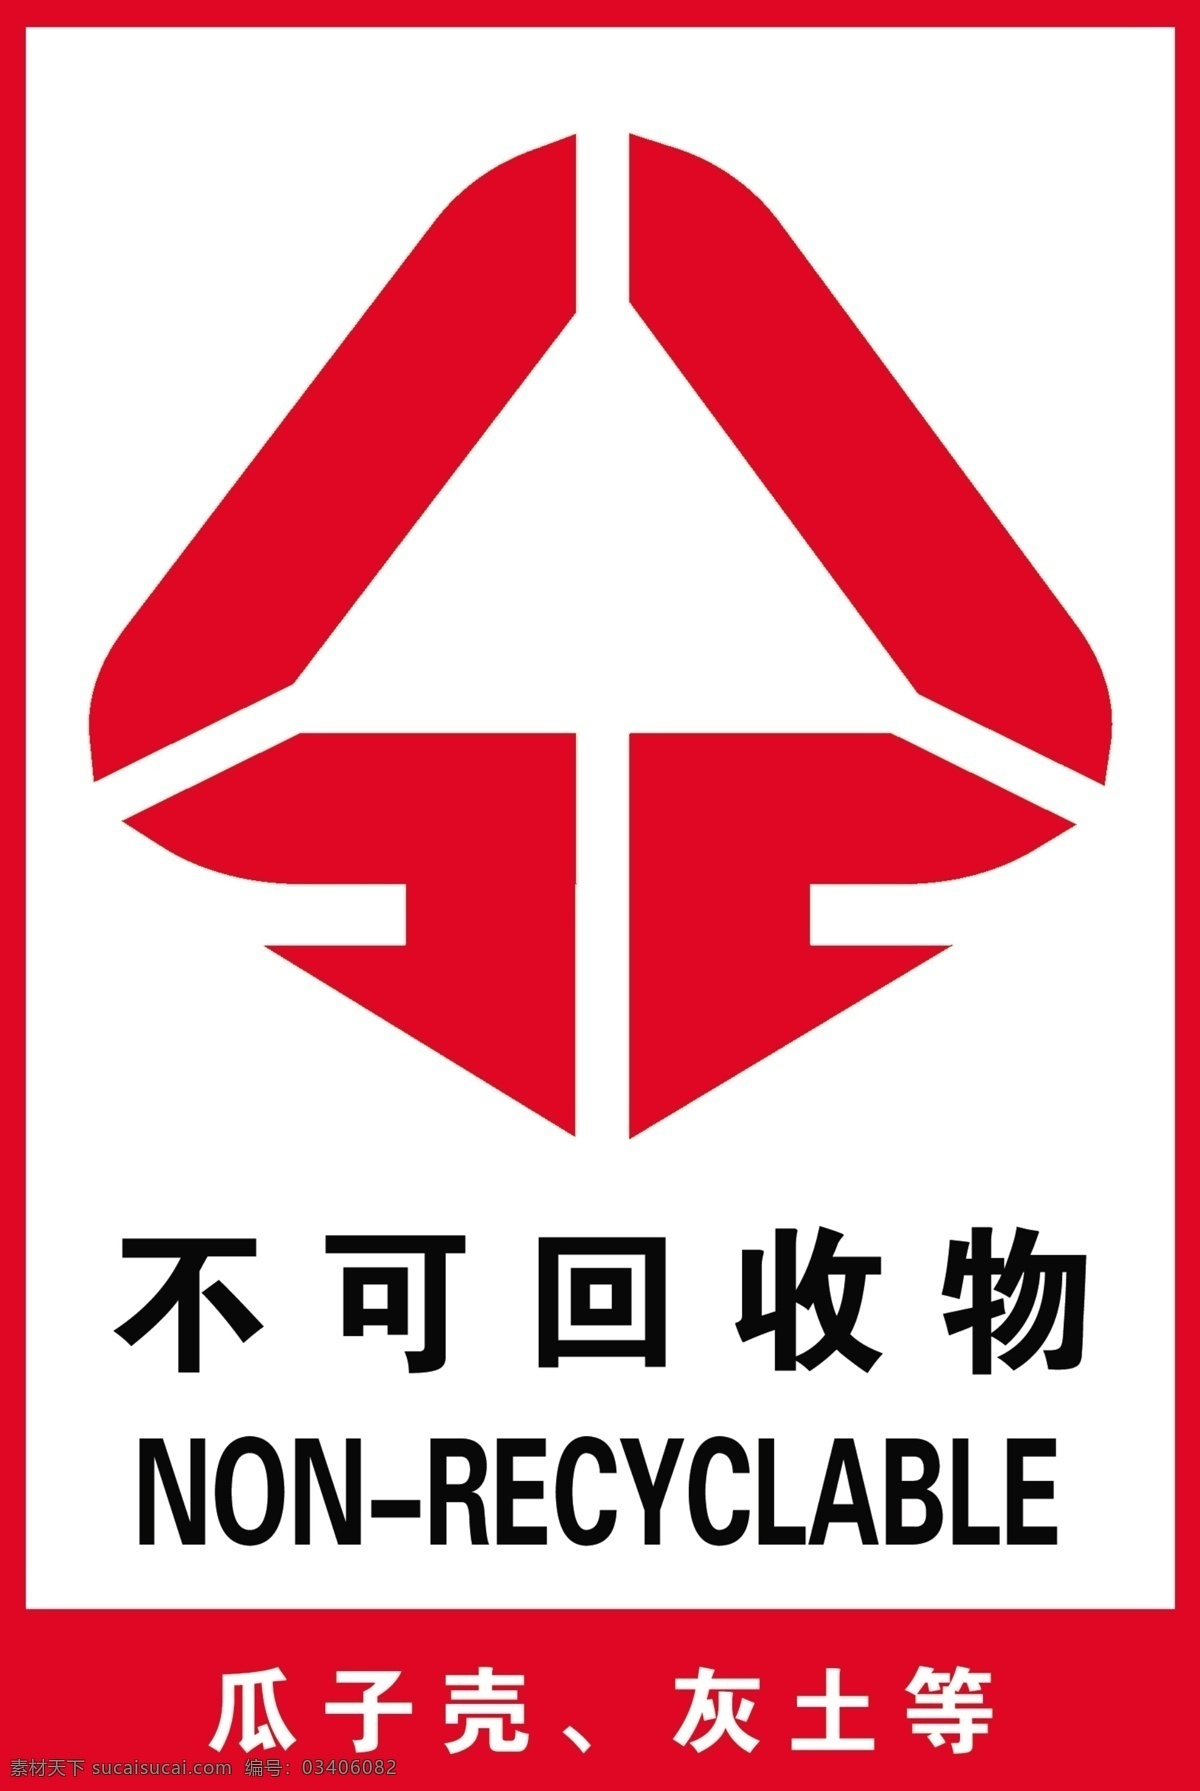 不可回收物 不可回收垃圾 垃圾标志 垃圾分类 垃圾 垃圾桶 垃圾箱 标志图标 公共标识标志